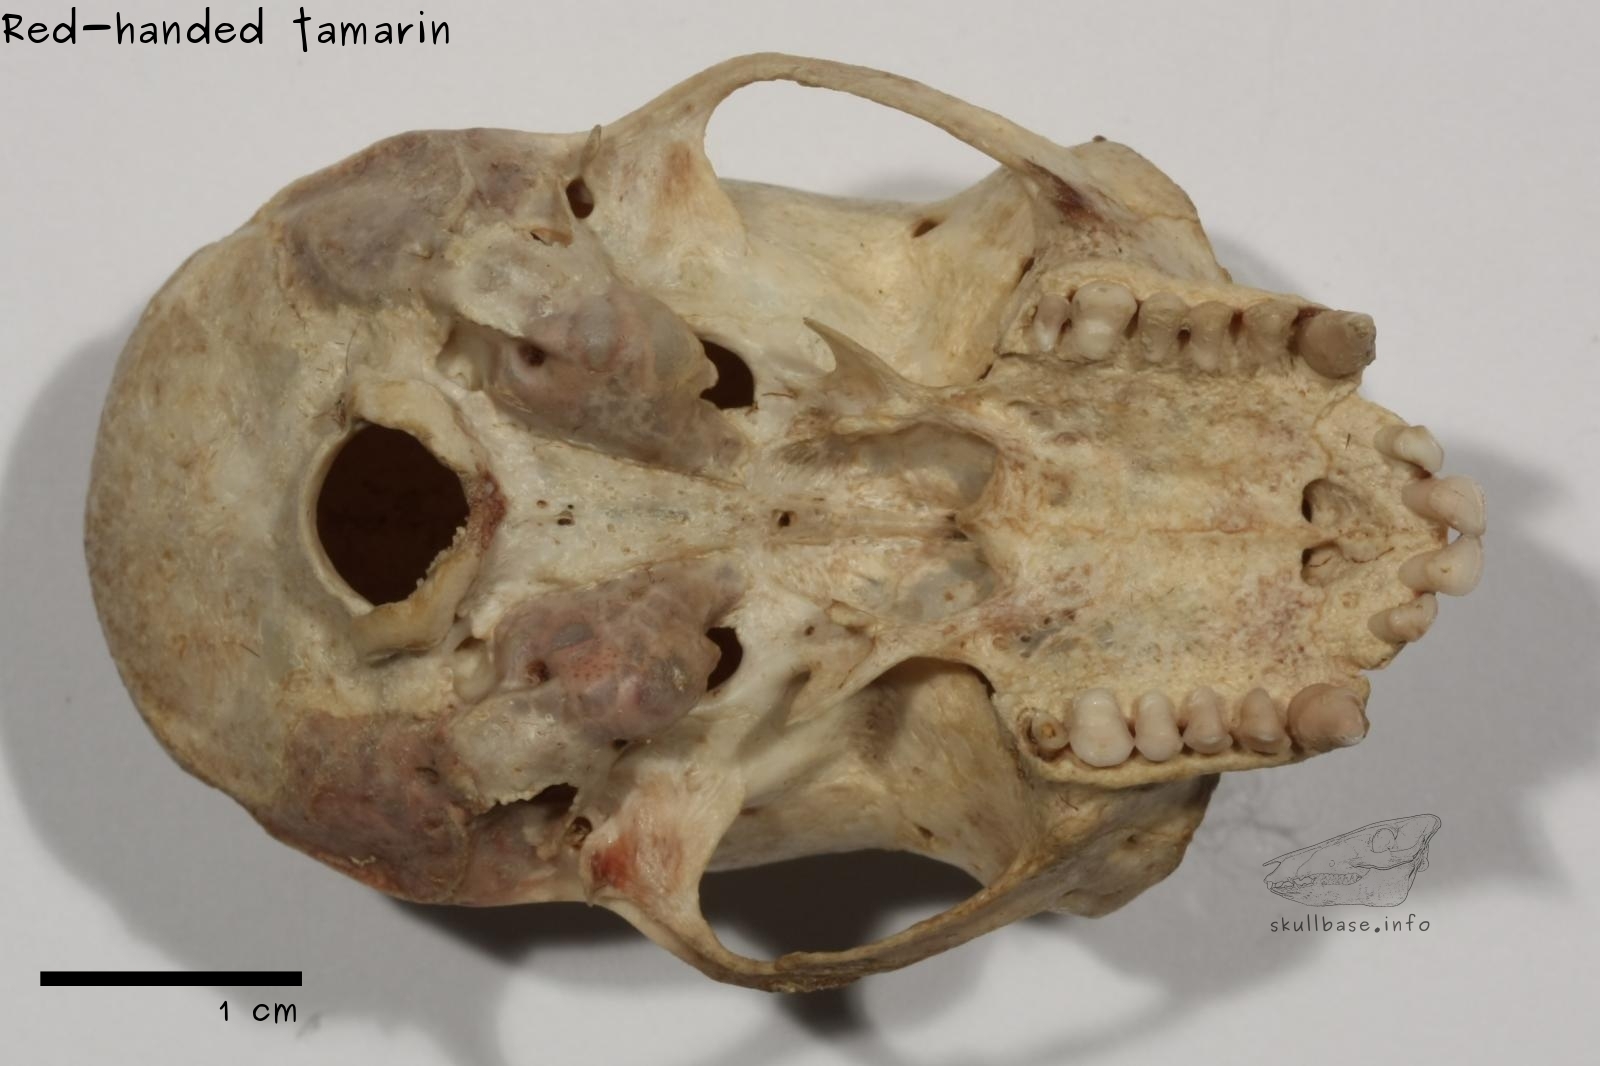 Red-handed tamarin (Saguinus midas) skull ventral view